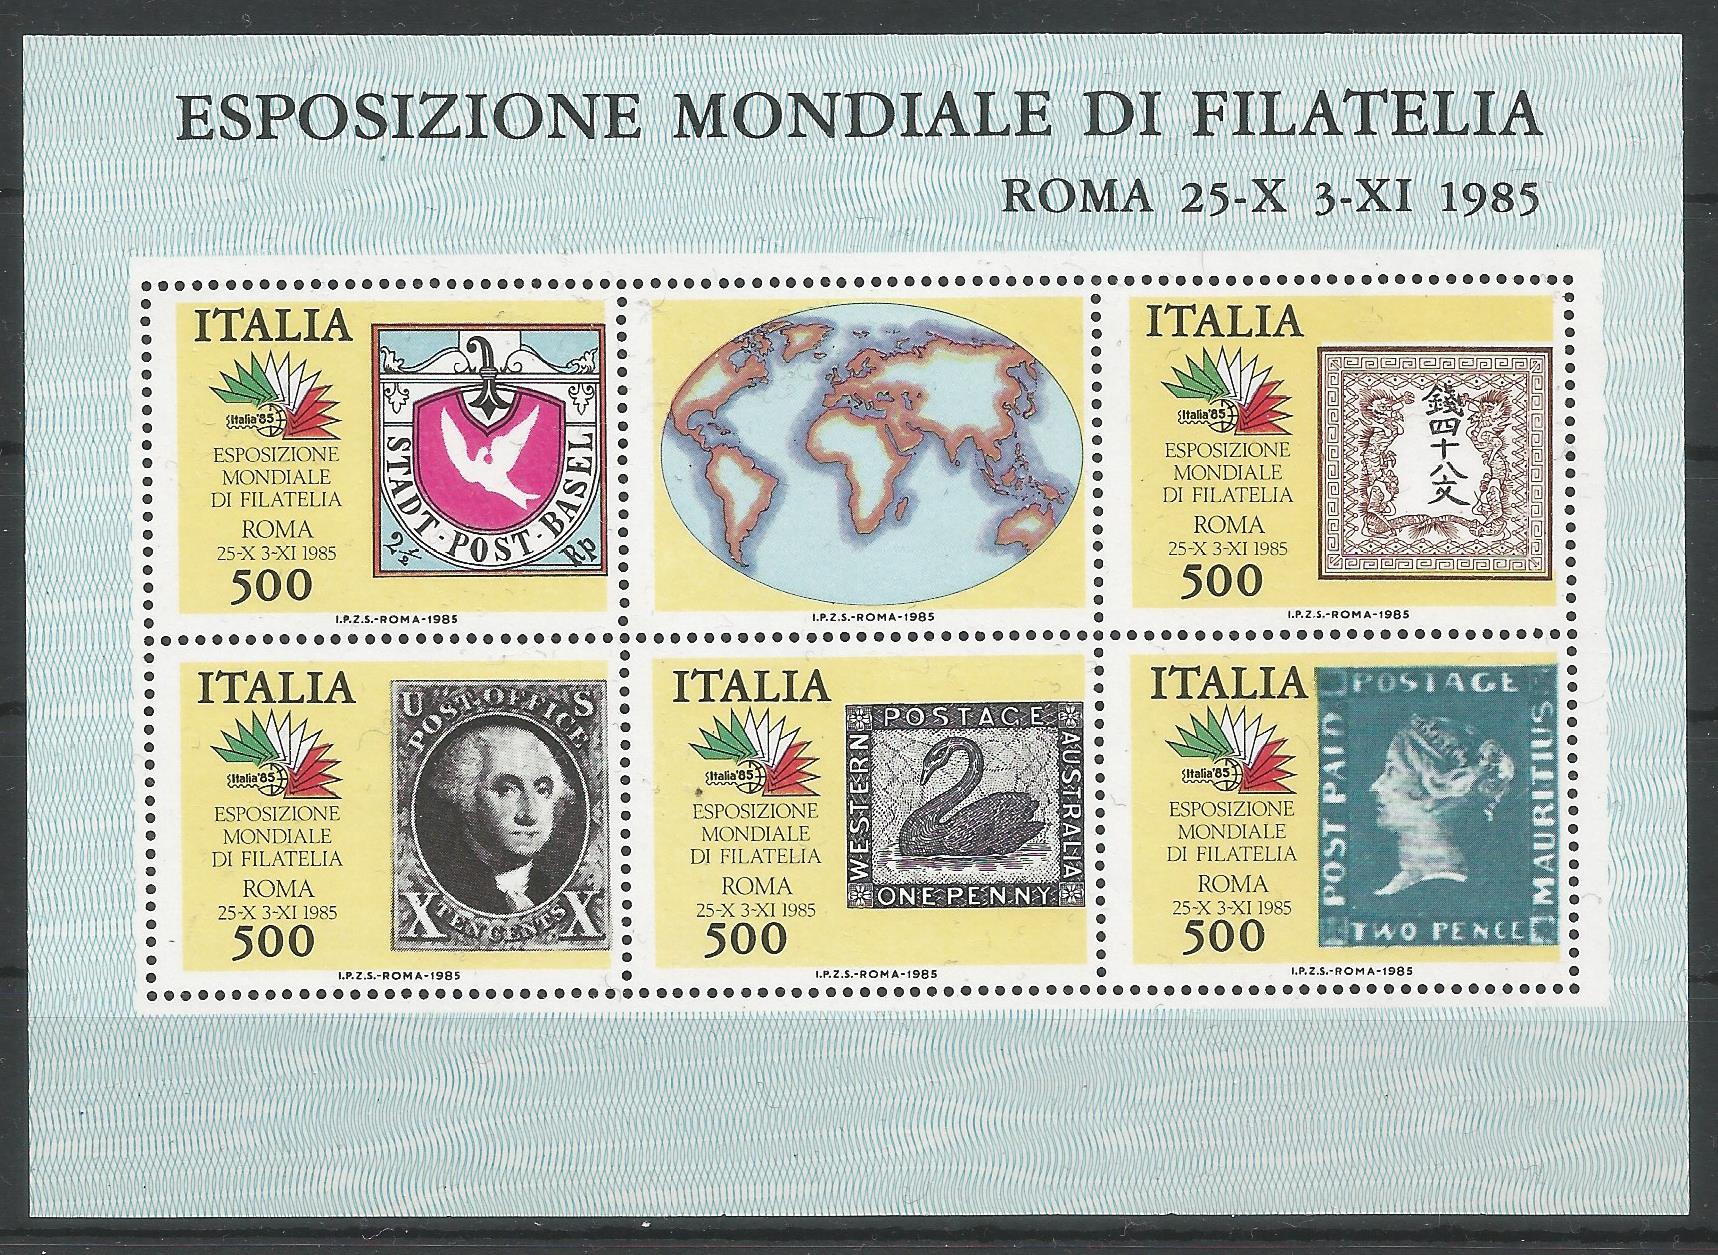 51947 - ITALIA - 1985 - Esposizione Mondiale di Filatelia - Foglietto nuovo - Unificato BF3 - [ITA020]